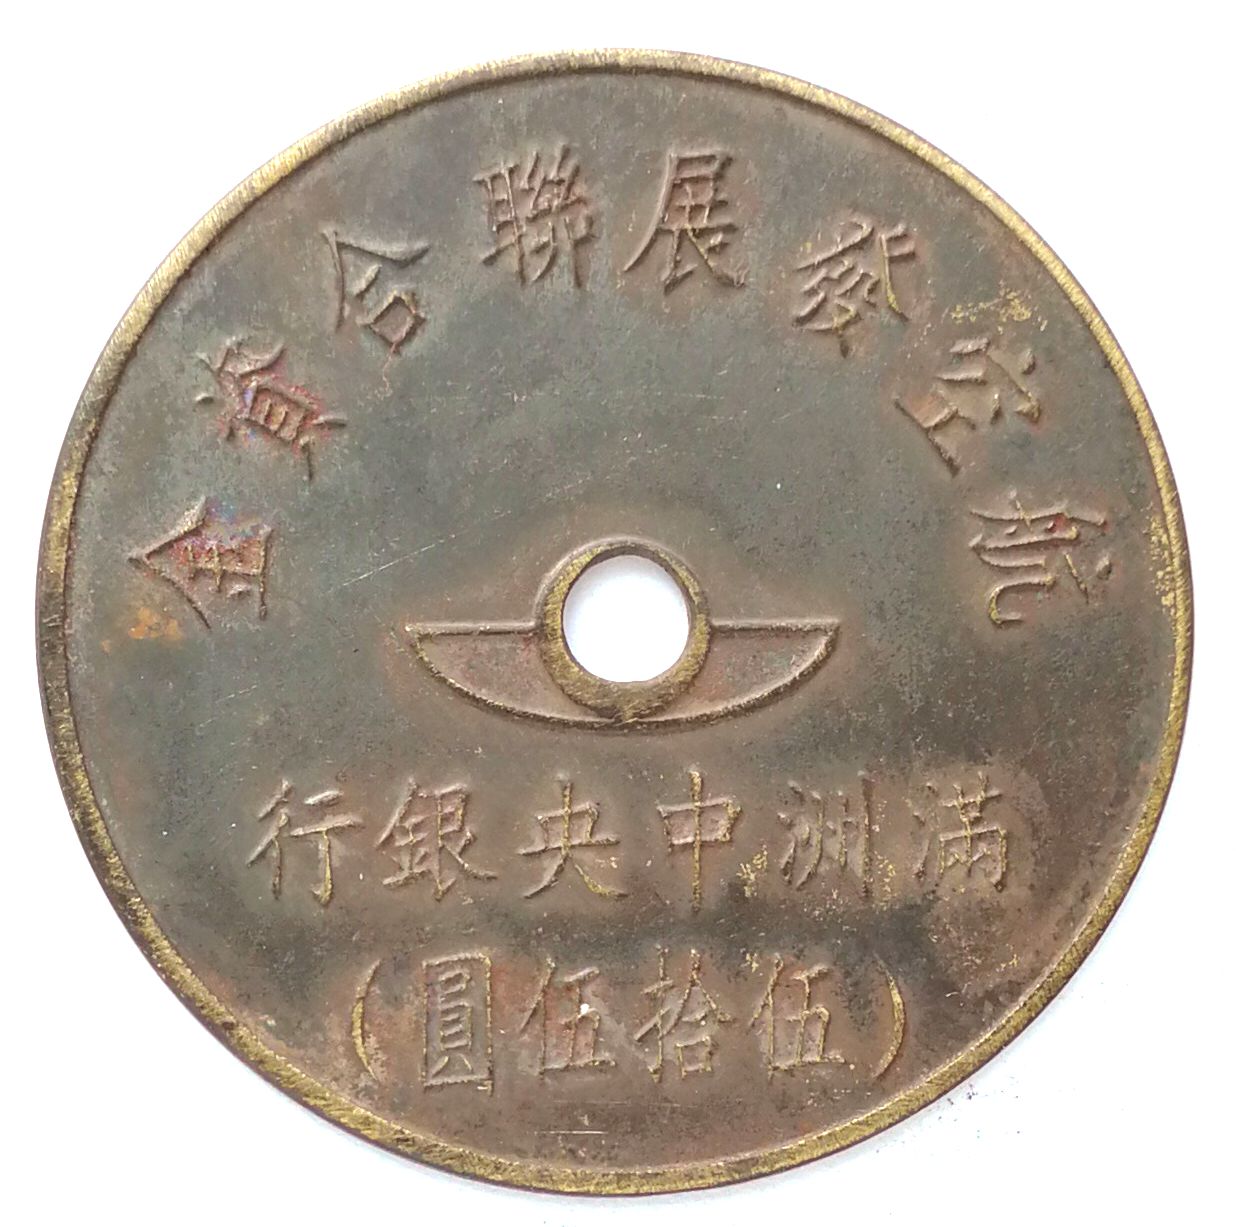 BT510, Manchukuo United Aviation Development Fund, 55 Yen Token, 1945